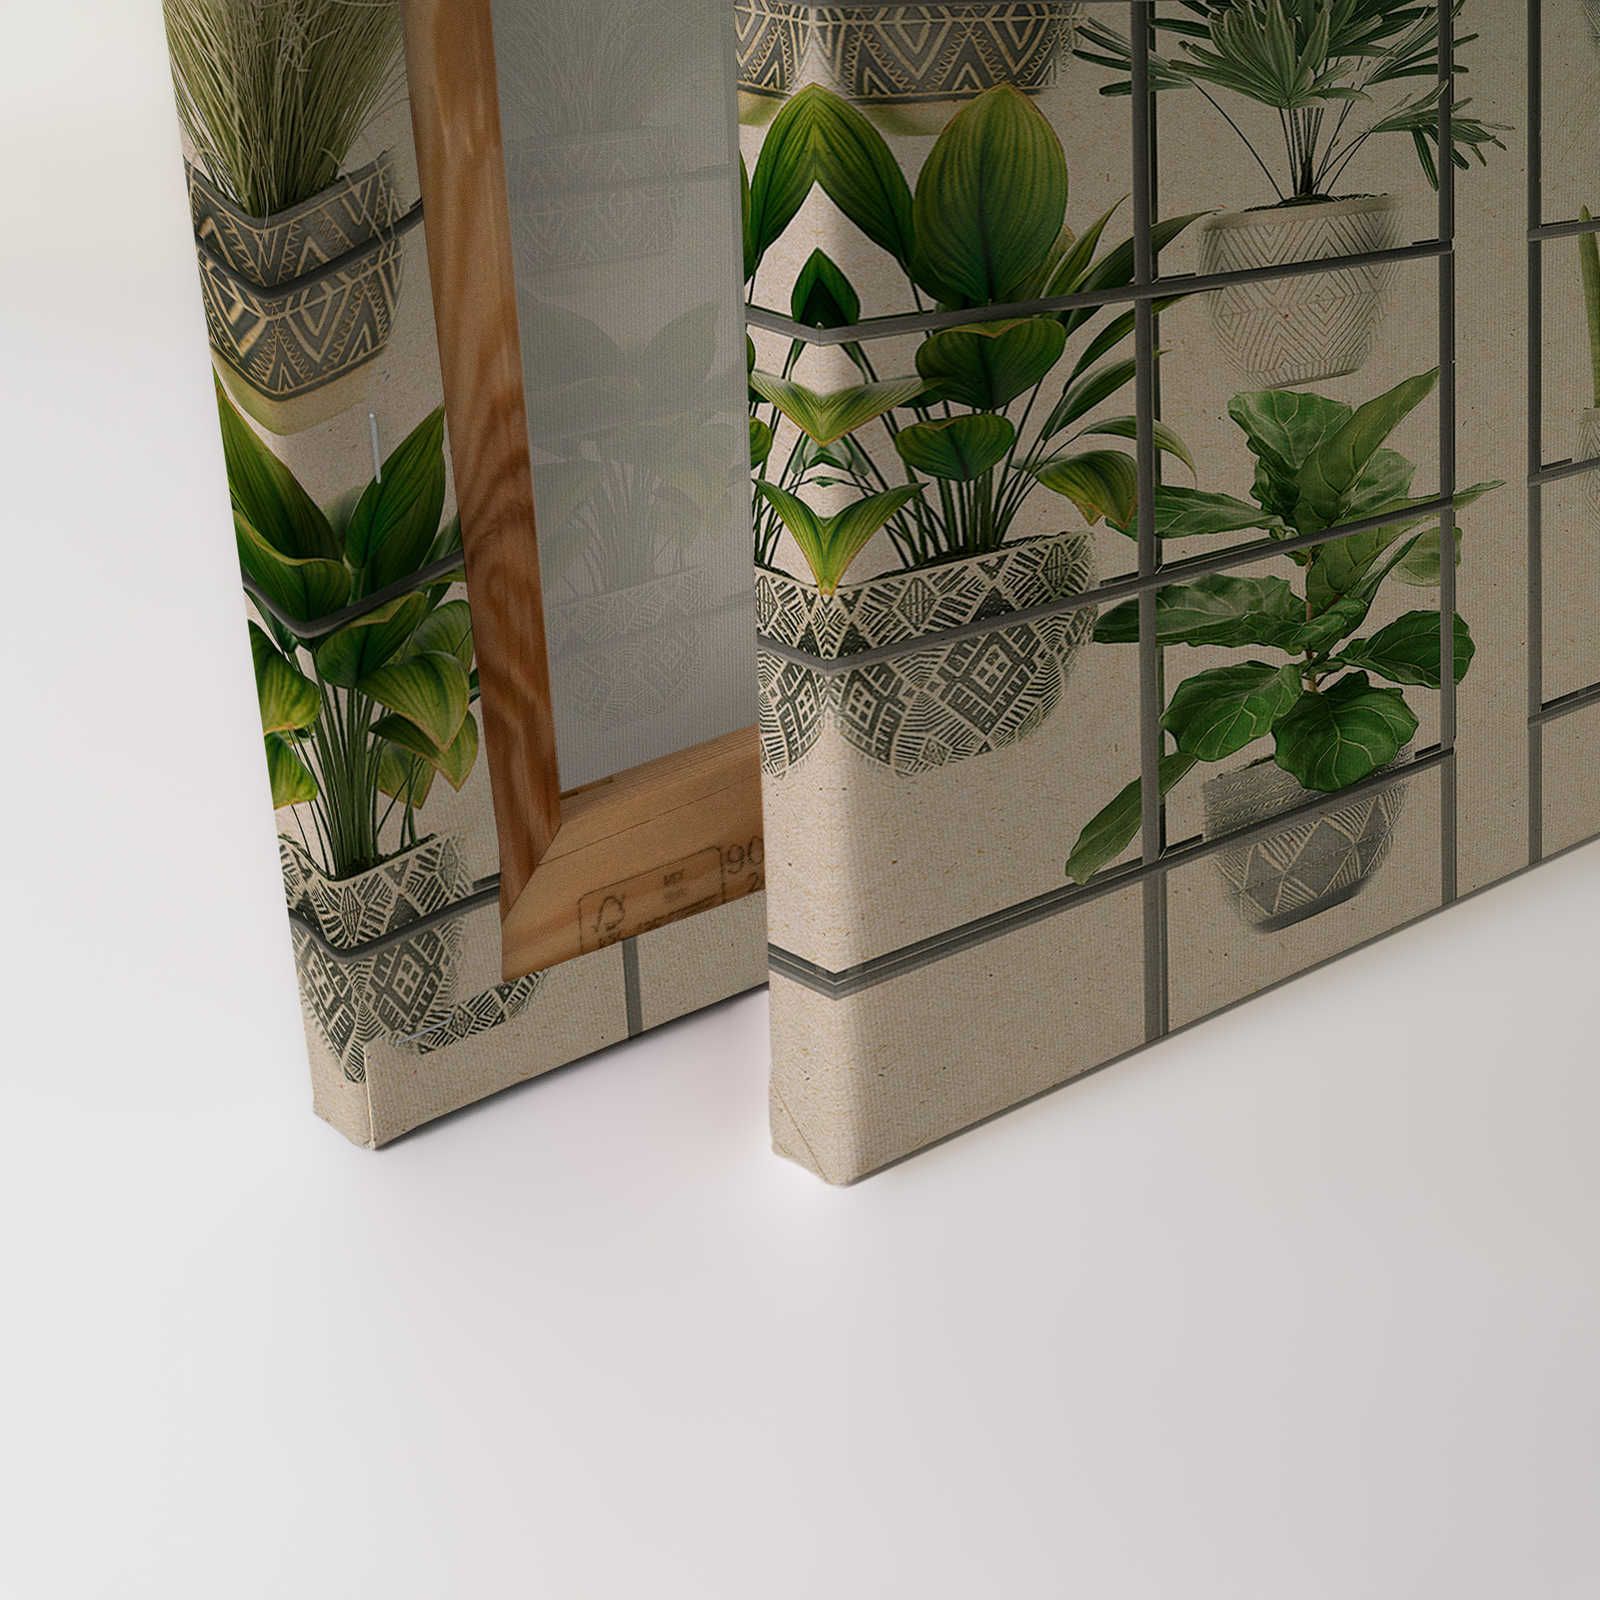             Plant Shop 2 - Leinwandbild moderne Pflanzenwand in Grün & Grau – 1,20 m x 0,80 m
        